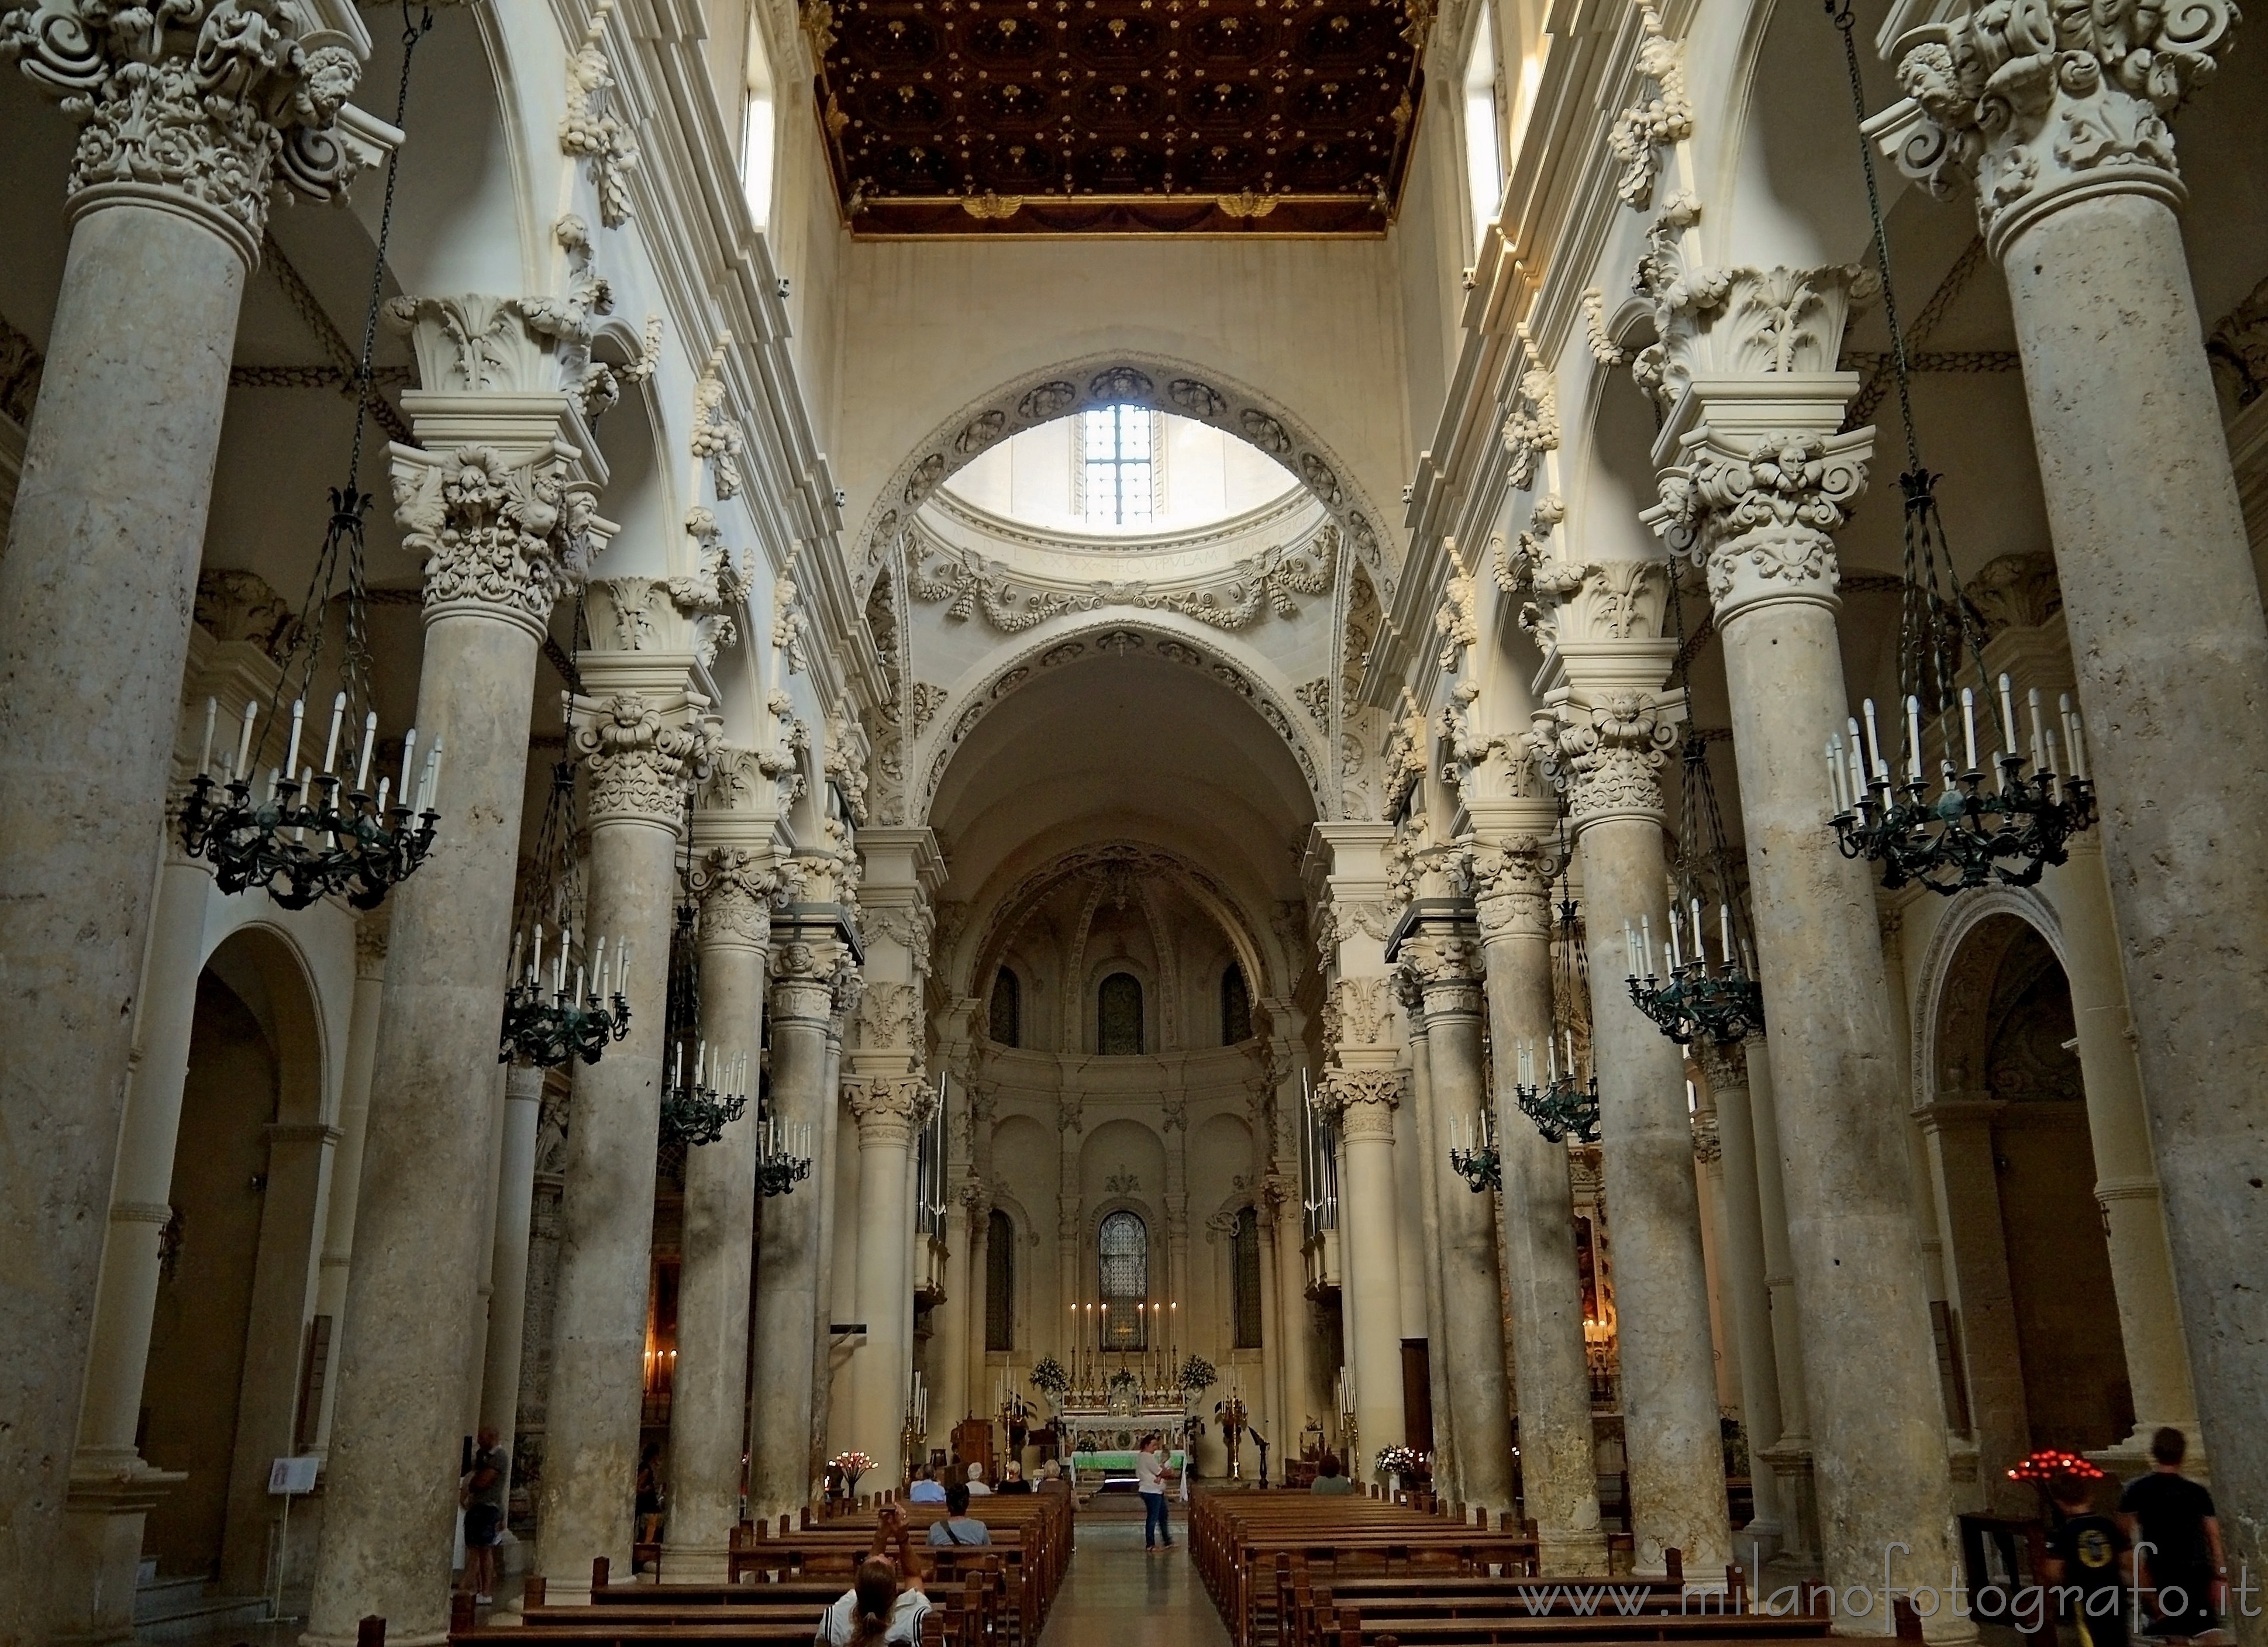 Lecce (Italy): Interiors of Santa Croce - Lecce (Italy)